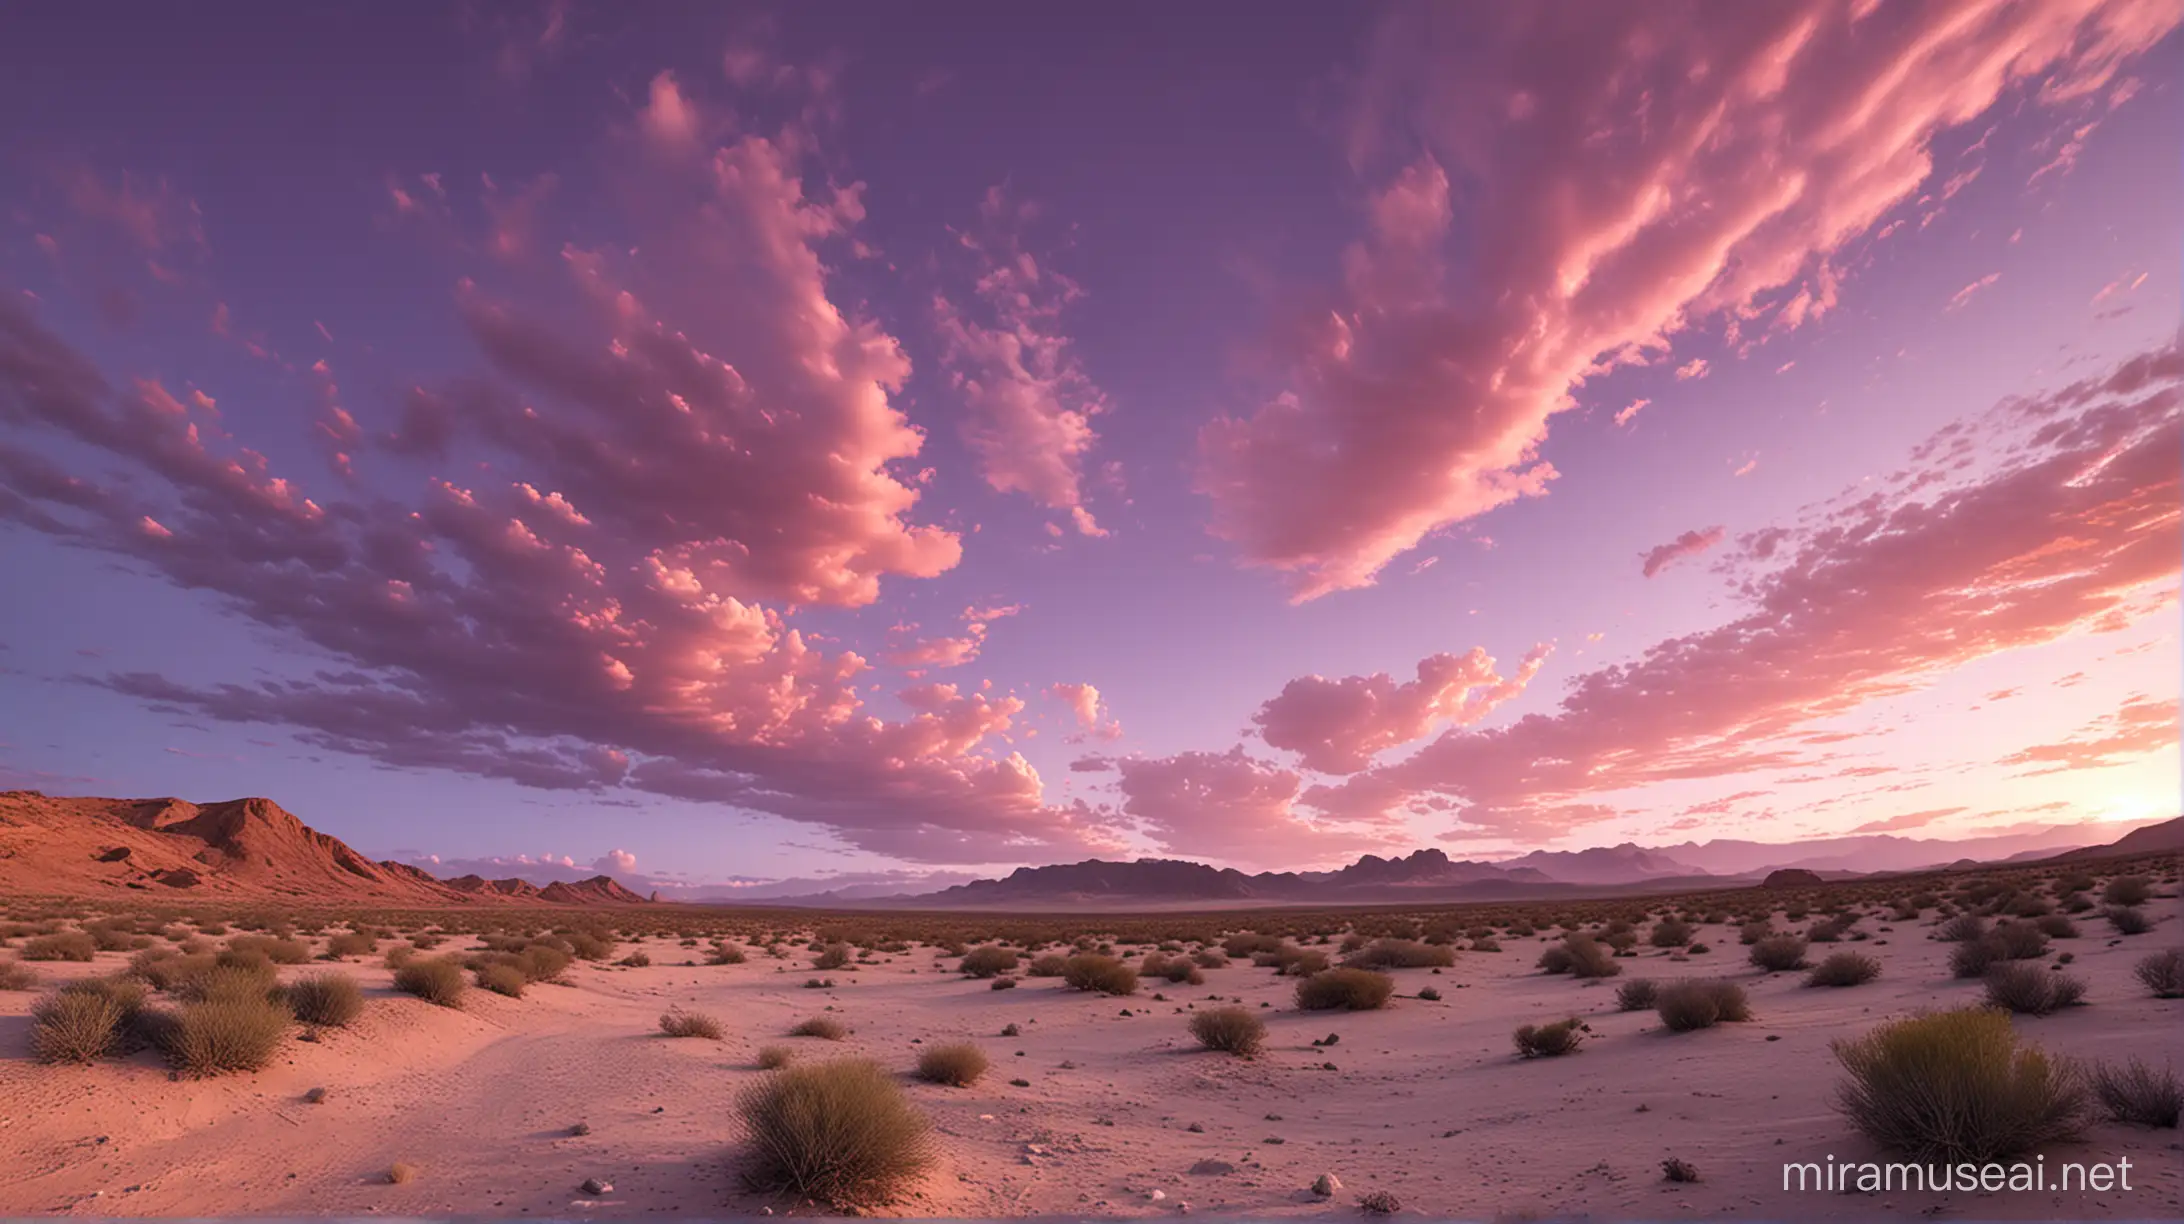 Vibrant Desert Landscape with Pink and Violet Sky